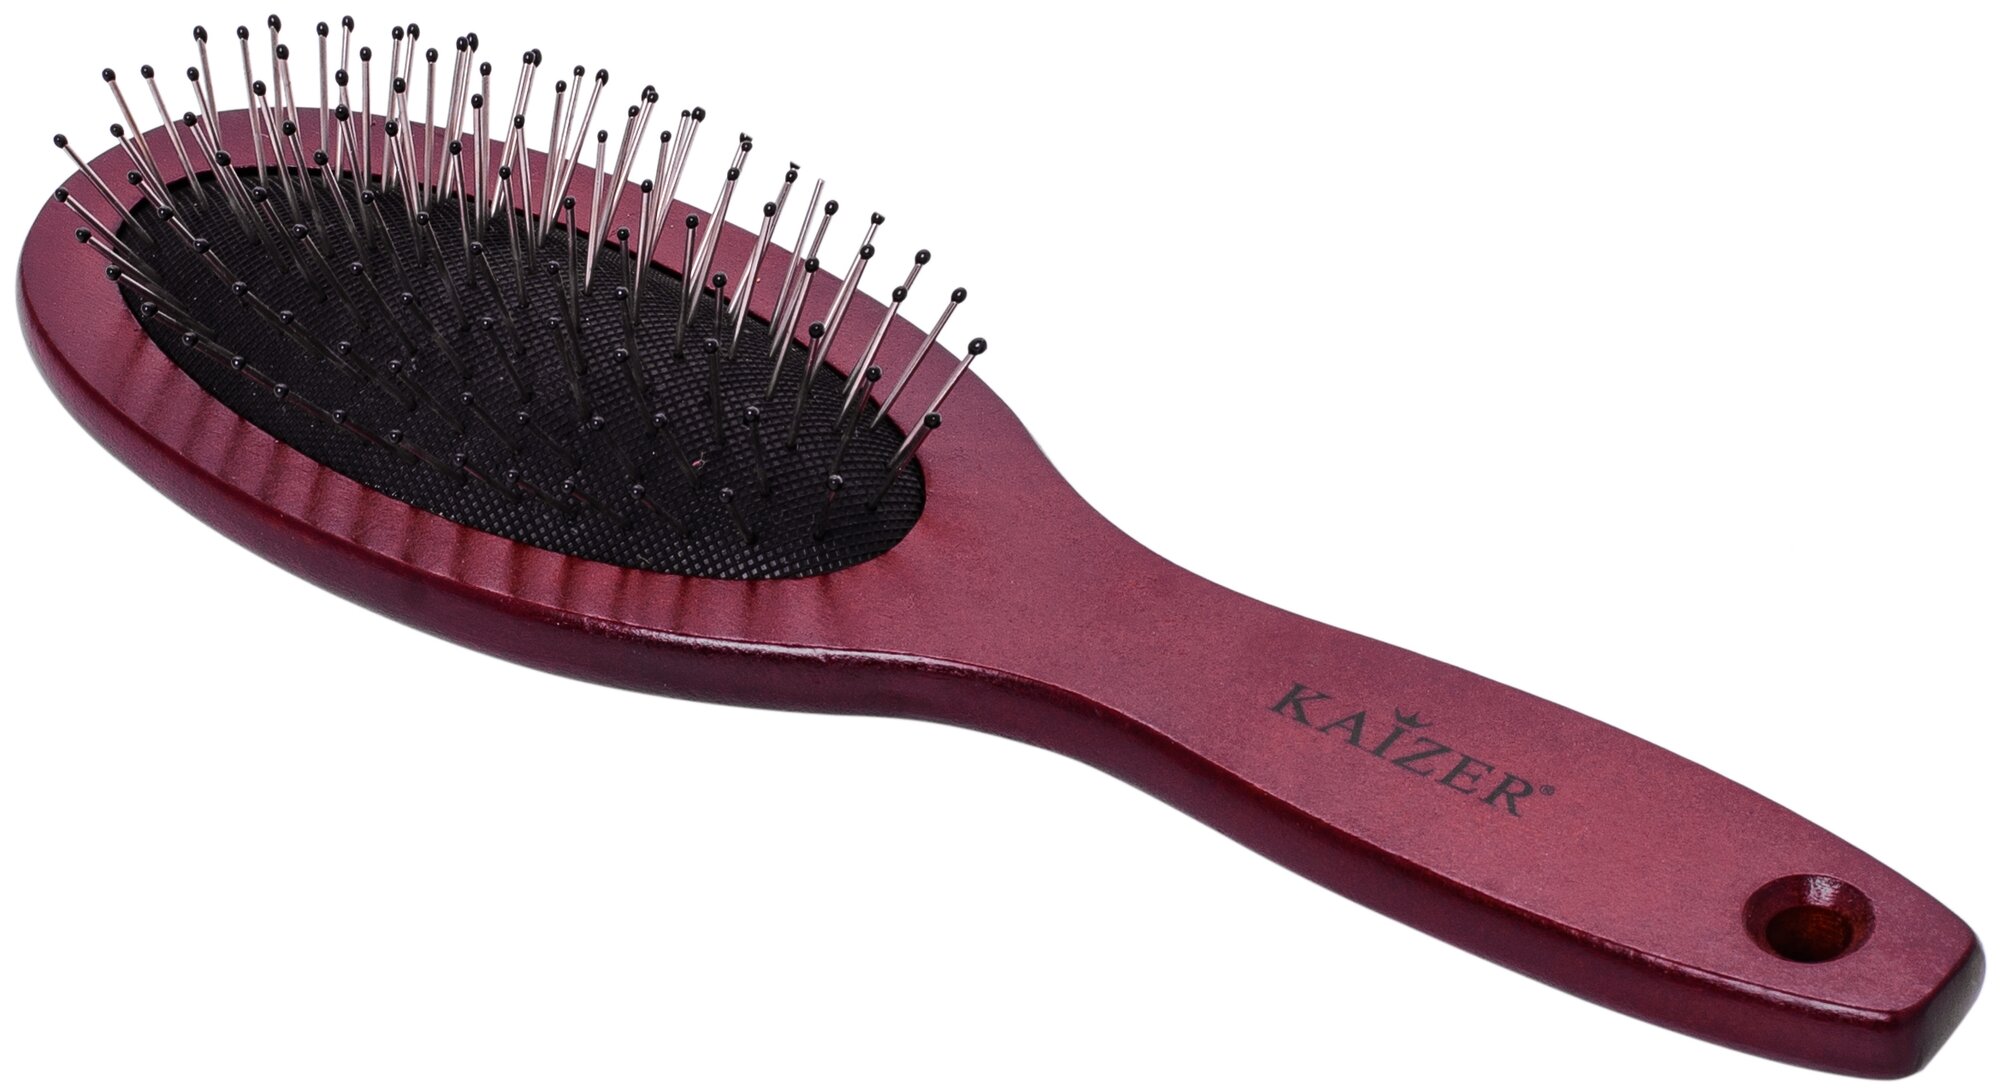 Kaizer массажная щетка 802043 для распутывания волос 19 см